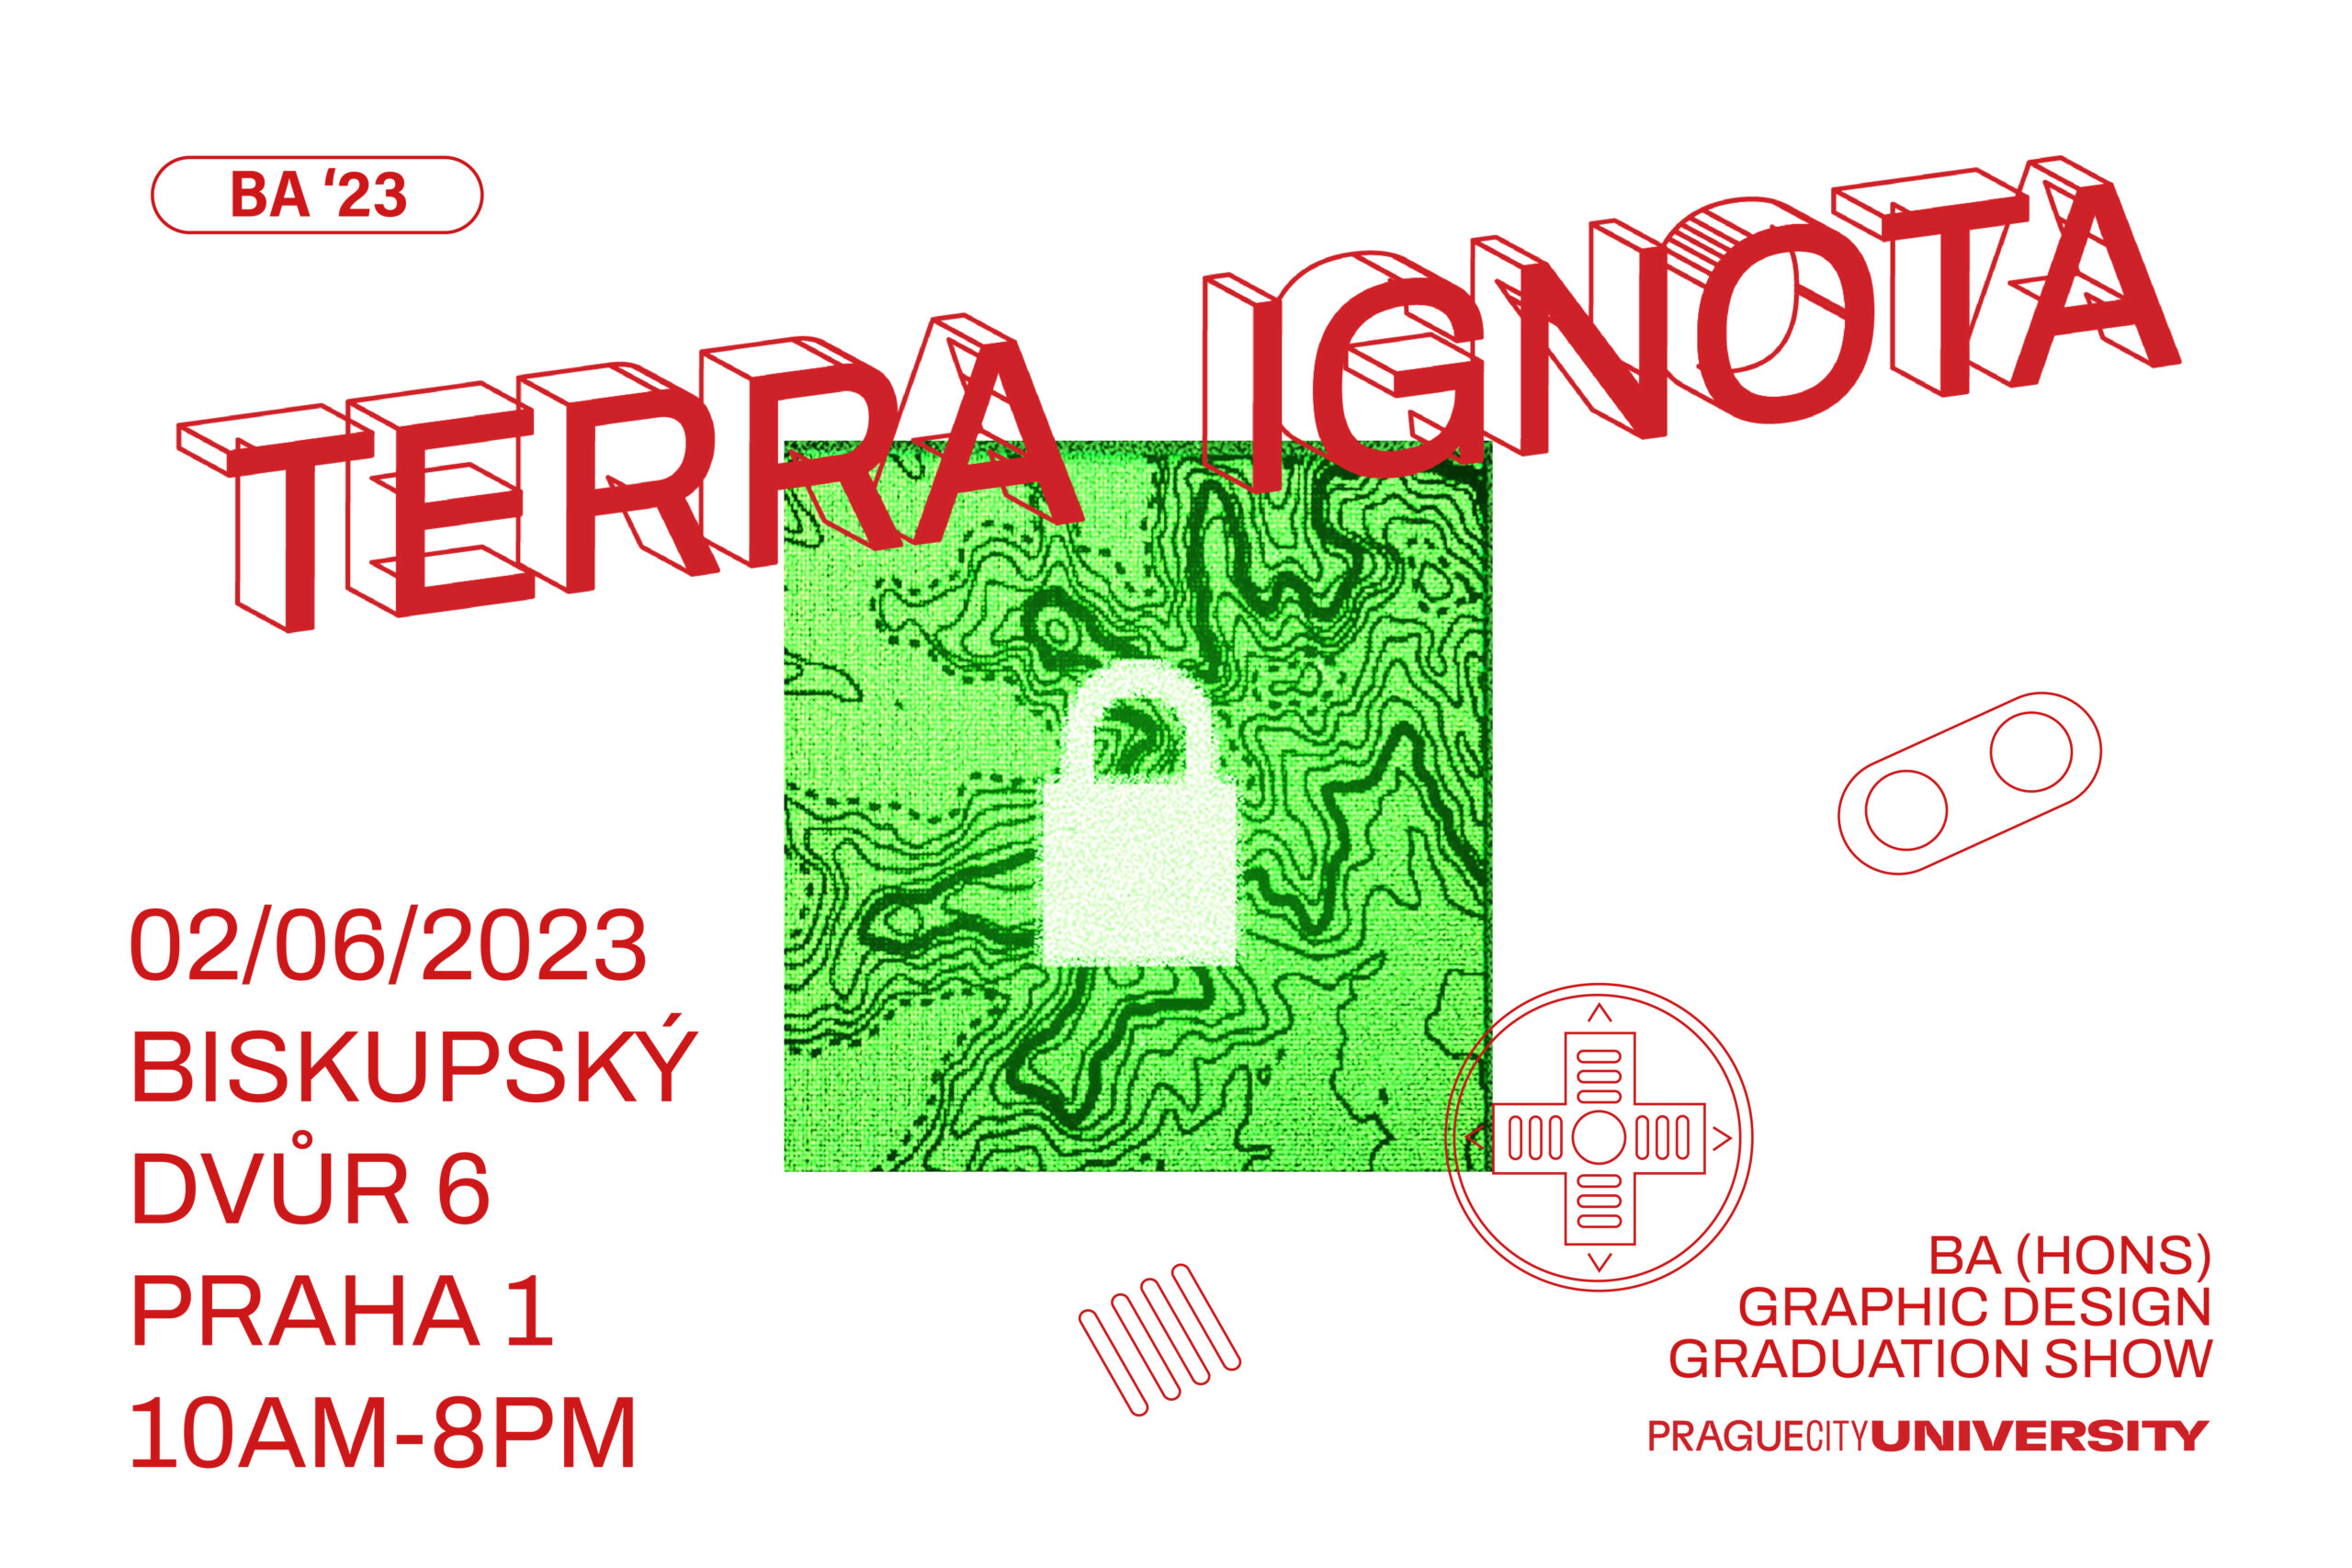 Terra Ignota, BA (Hons) Graphic Design, Graduation Show